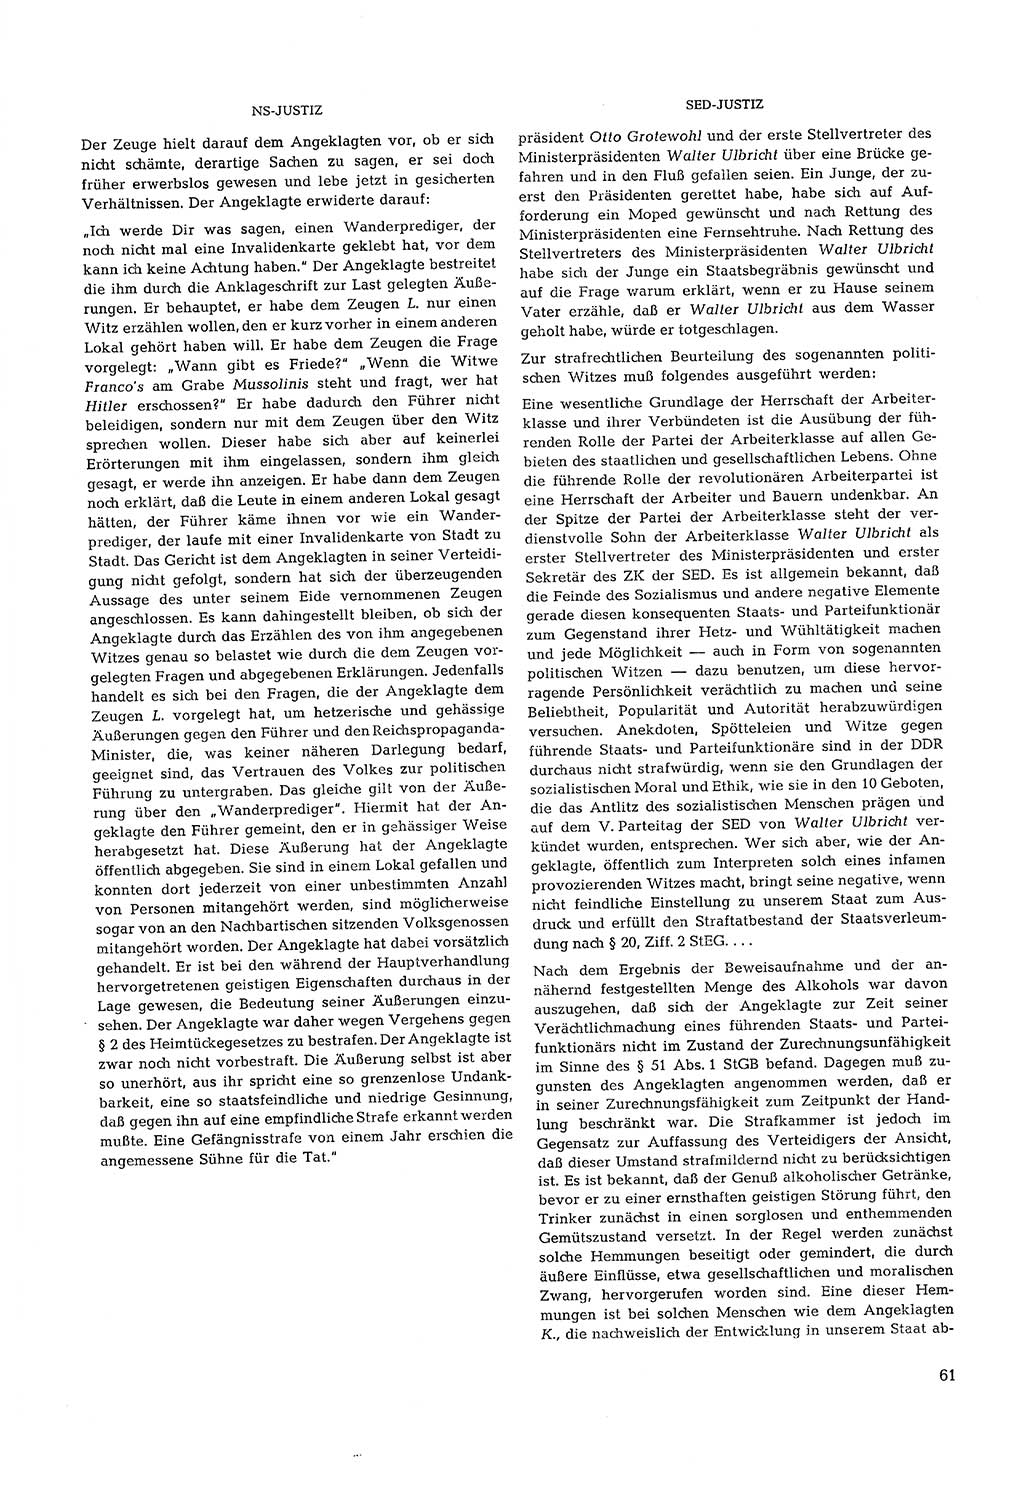 Partei-Justiz, Dokumentation über den nationalsozialistischen und kommunistischen Rechtsmißbrauch in Deutschland 1933-1963, Seite 61 (Part.-Just. Dtl. natsoz. komm. 1933-1963, S. 61)